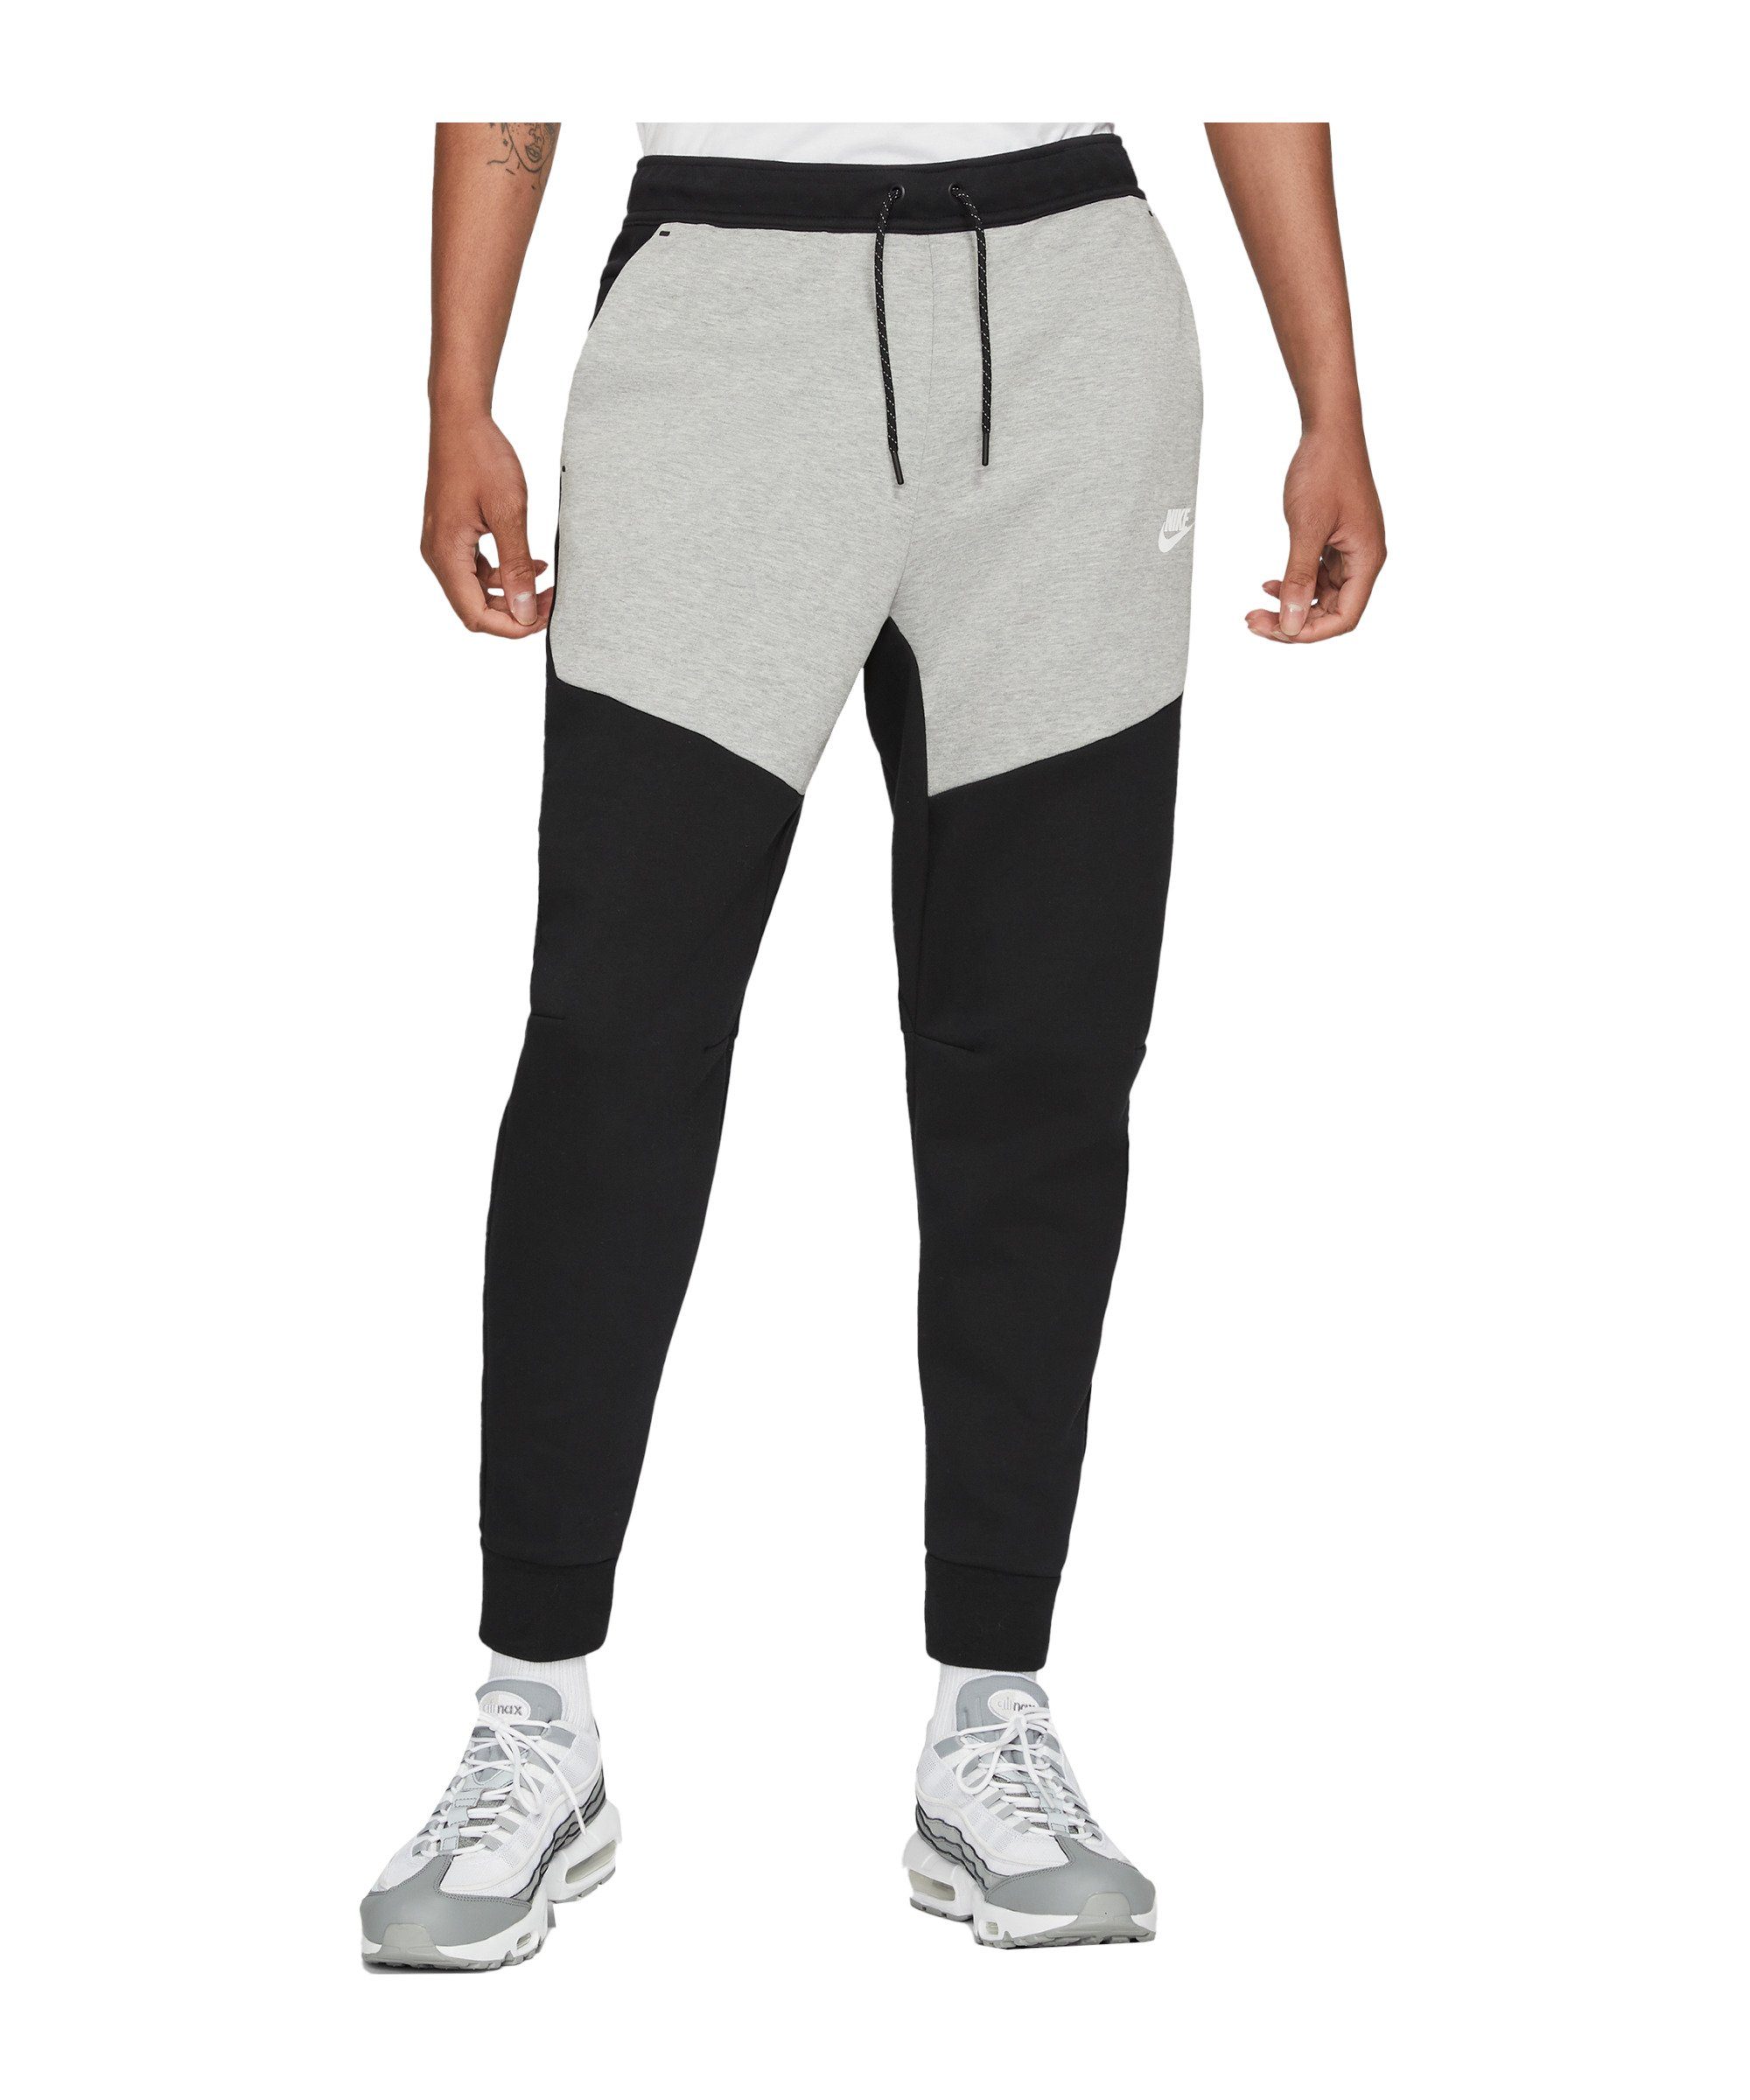 Tech Nike Jogginghose Sportswear schwarzgrauweiss Tall Fleece Jogginghose